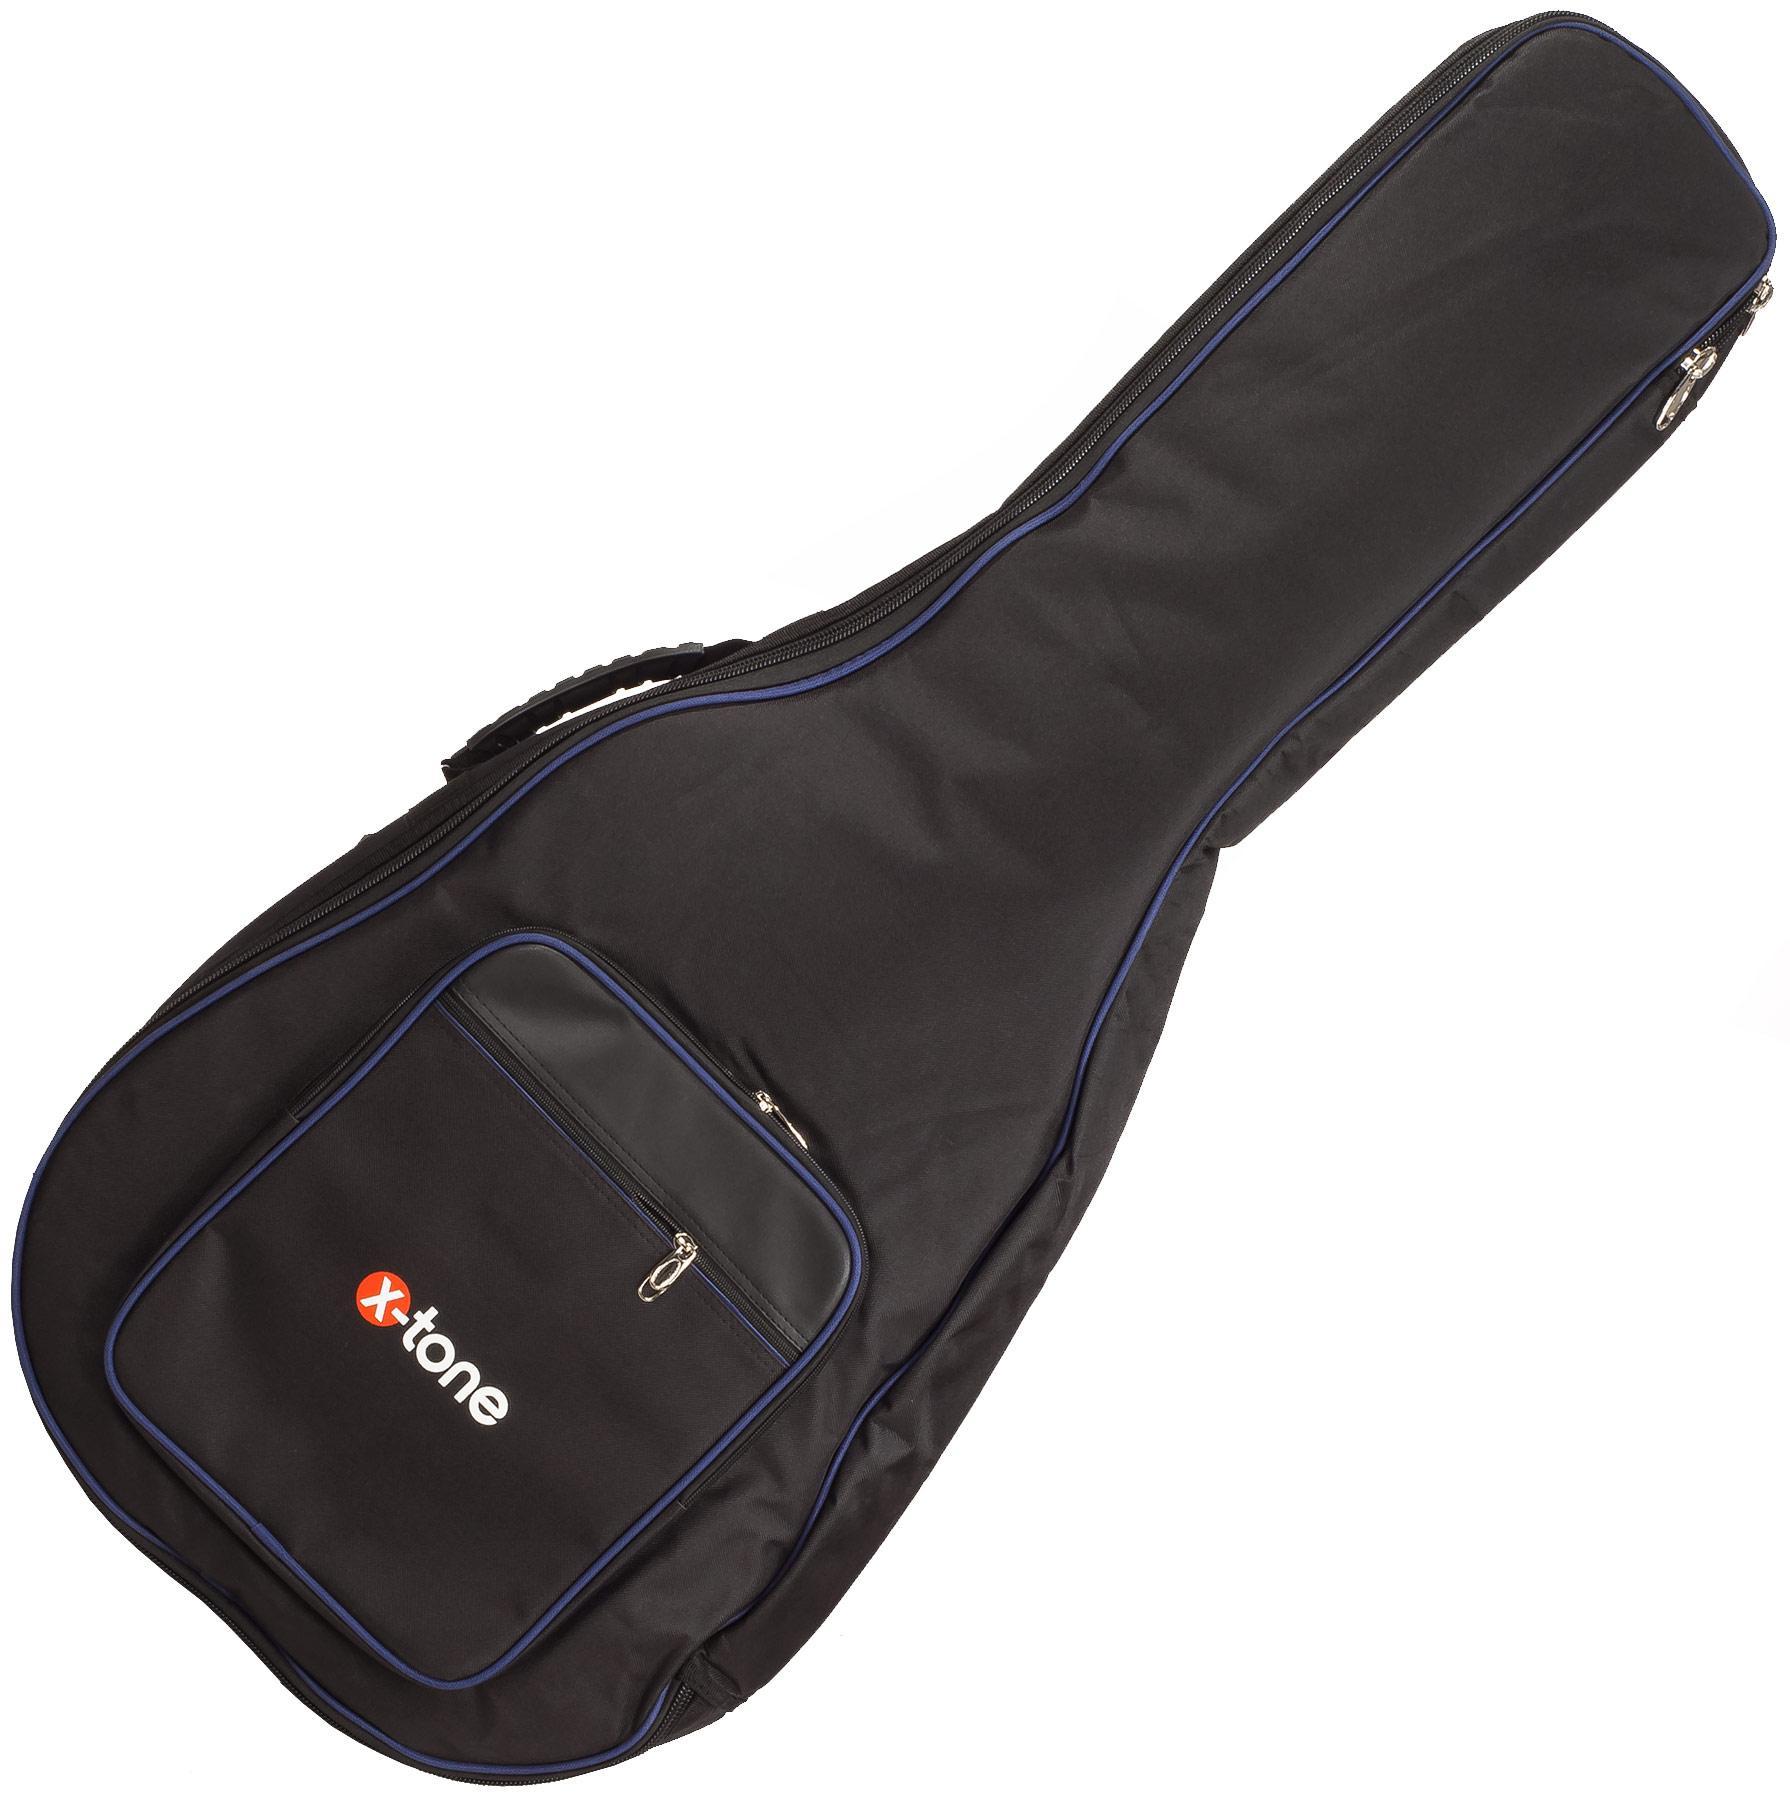 Bolsa para guitarra acústica X-tone Nylon 15mm Dreadnought Guitar Bag - Black